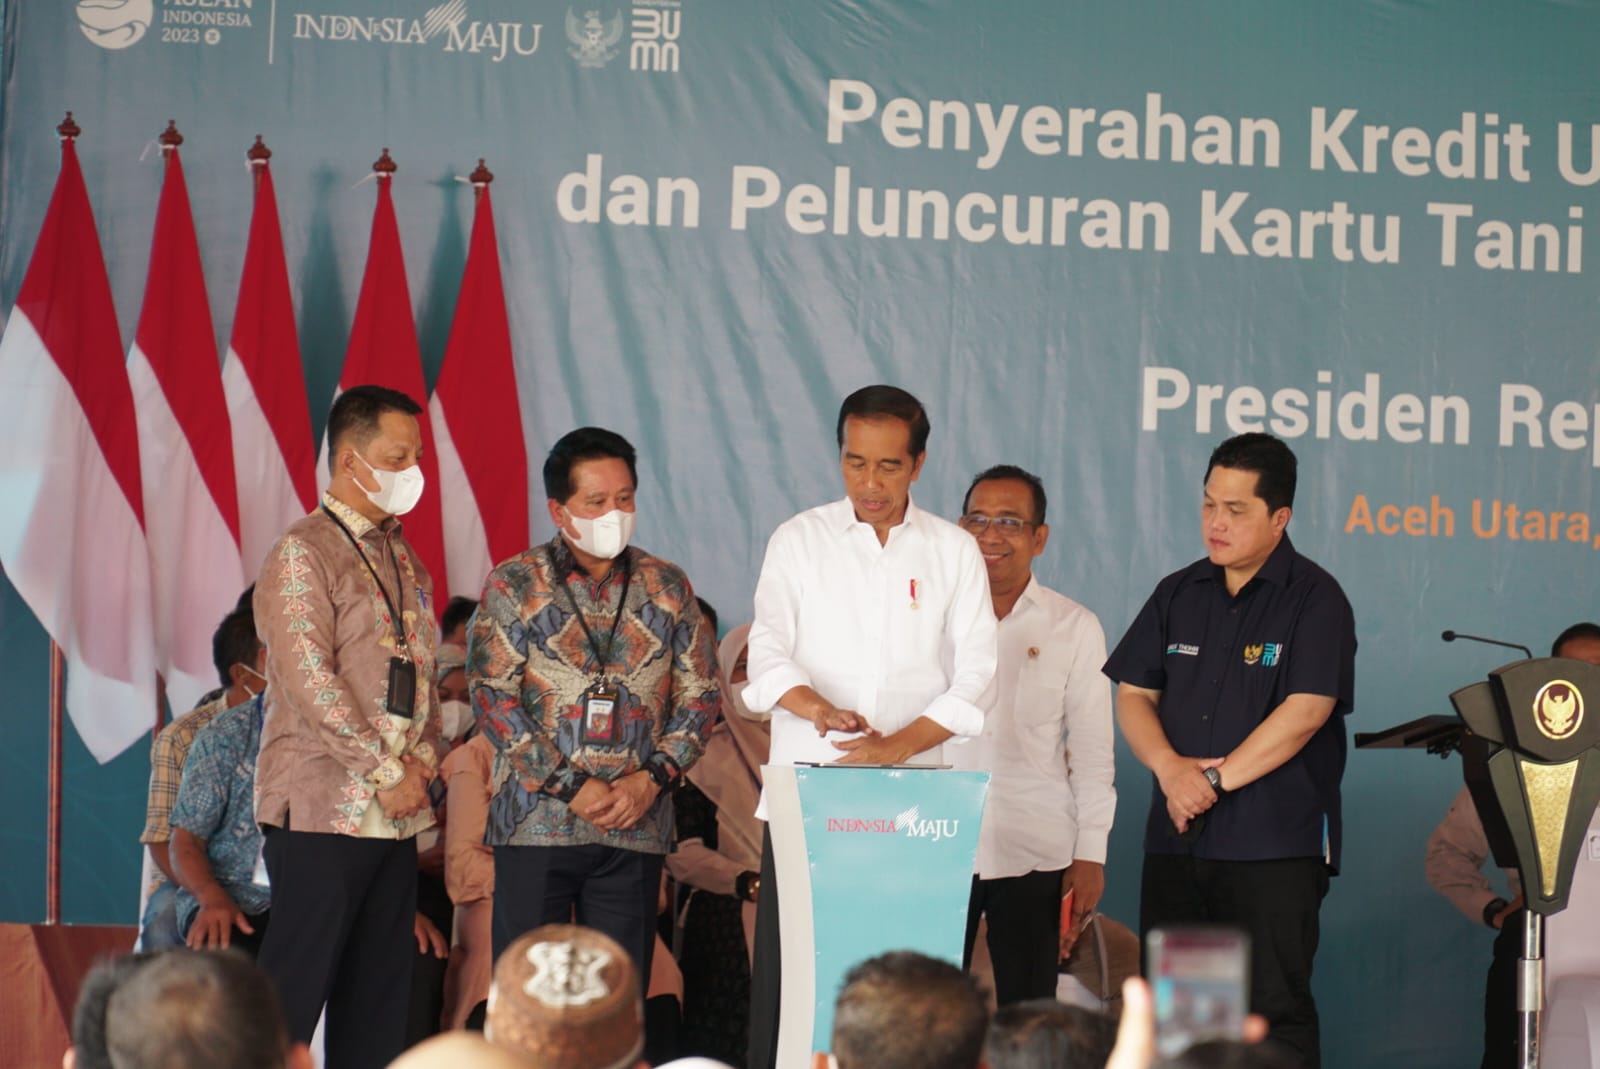  Presiden Jokowi Luncurkan Kartu Tani Digital dan KUR BSI di Aceh, Untuk Ketahanan Pangan